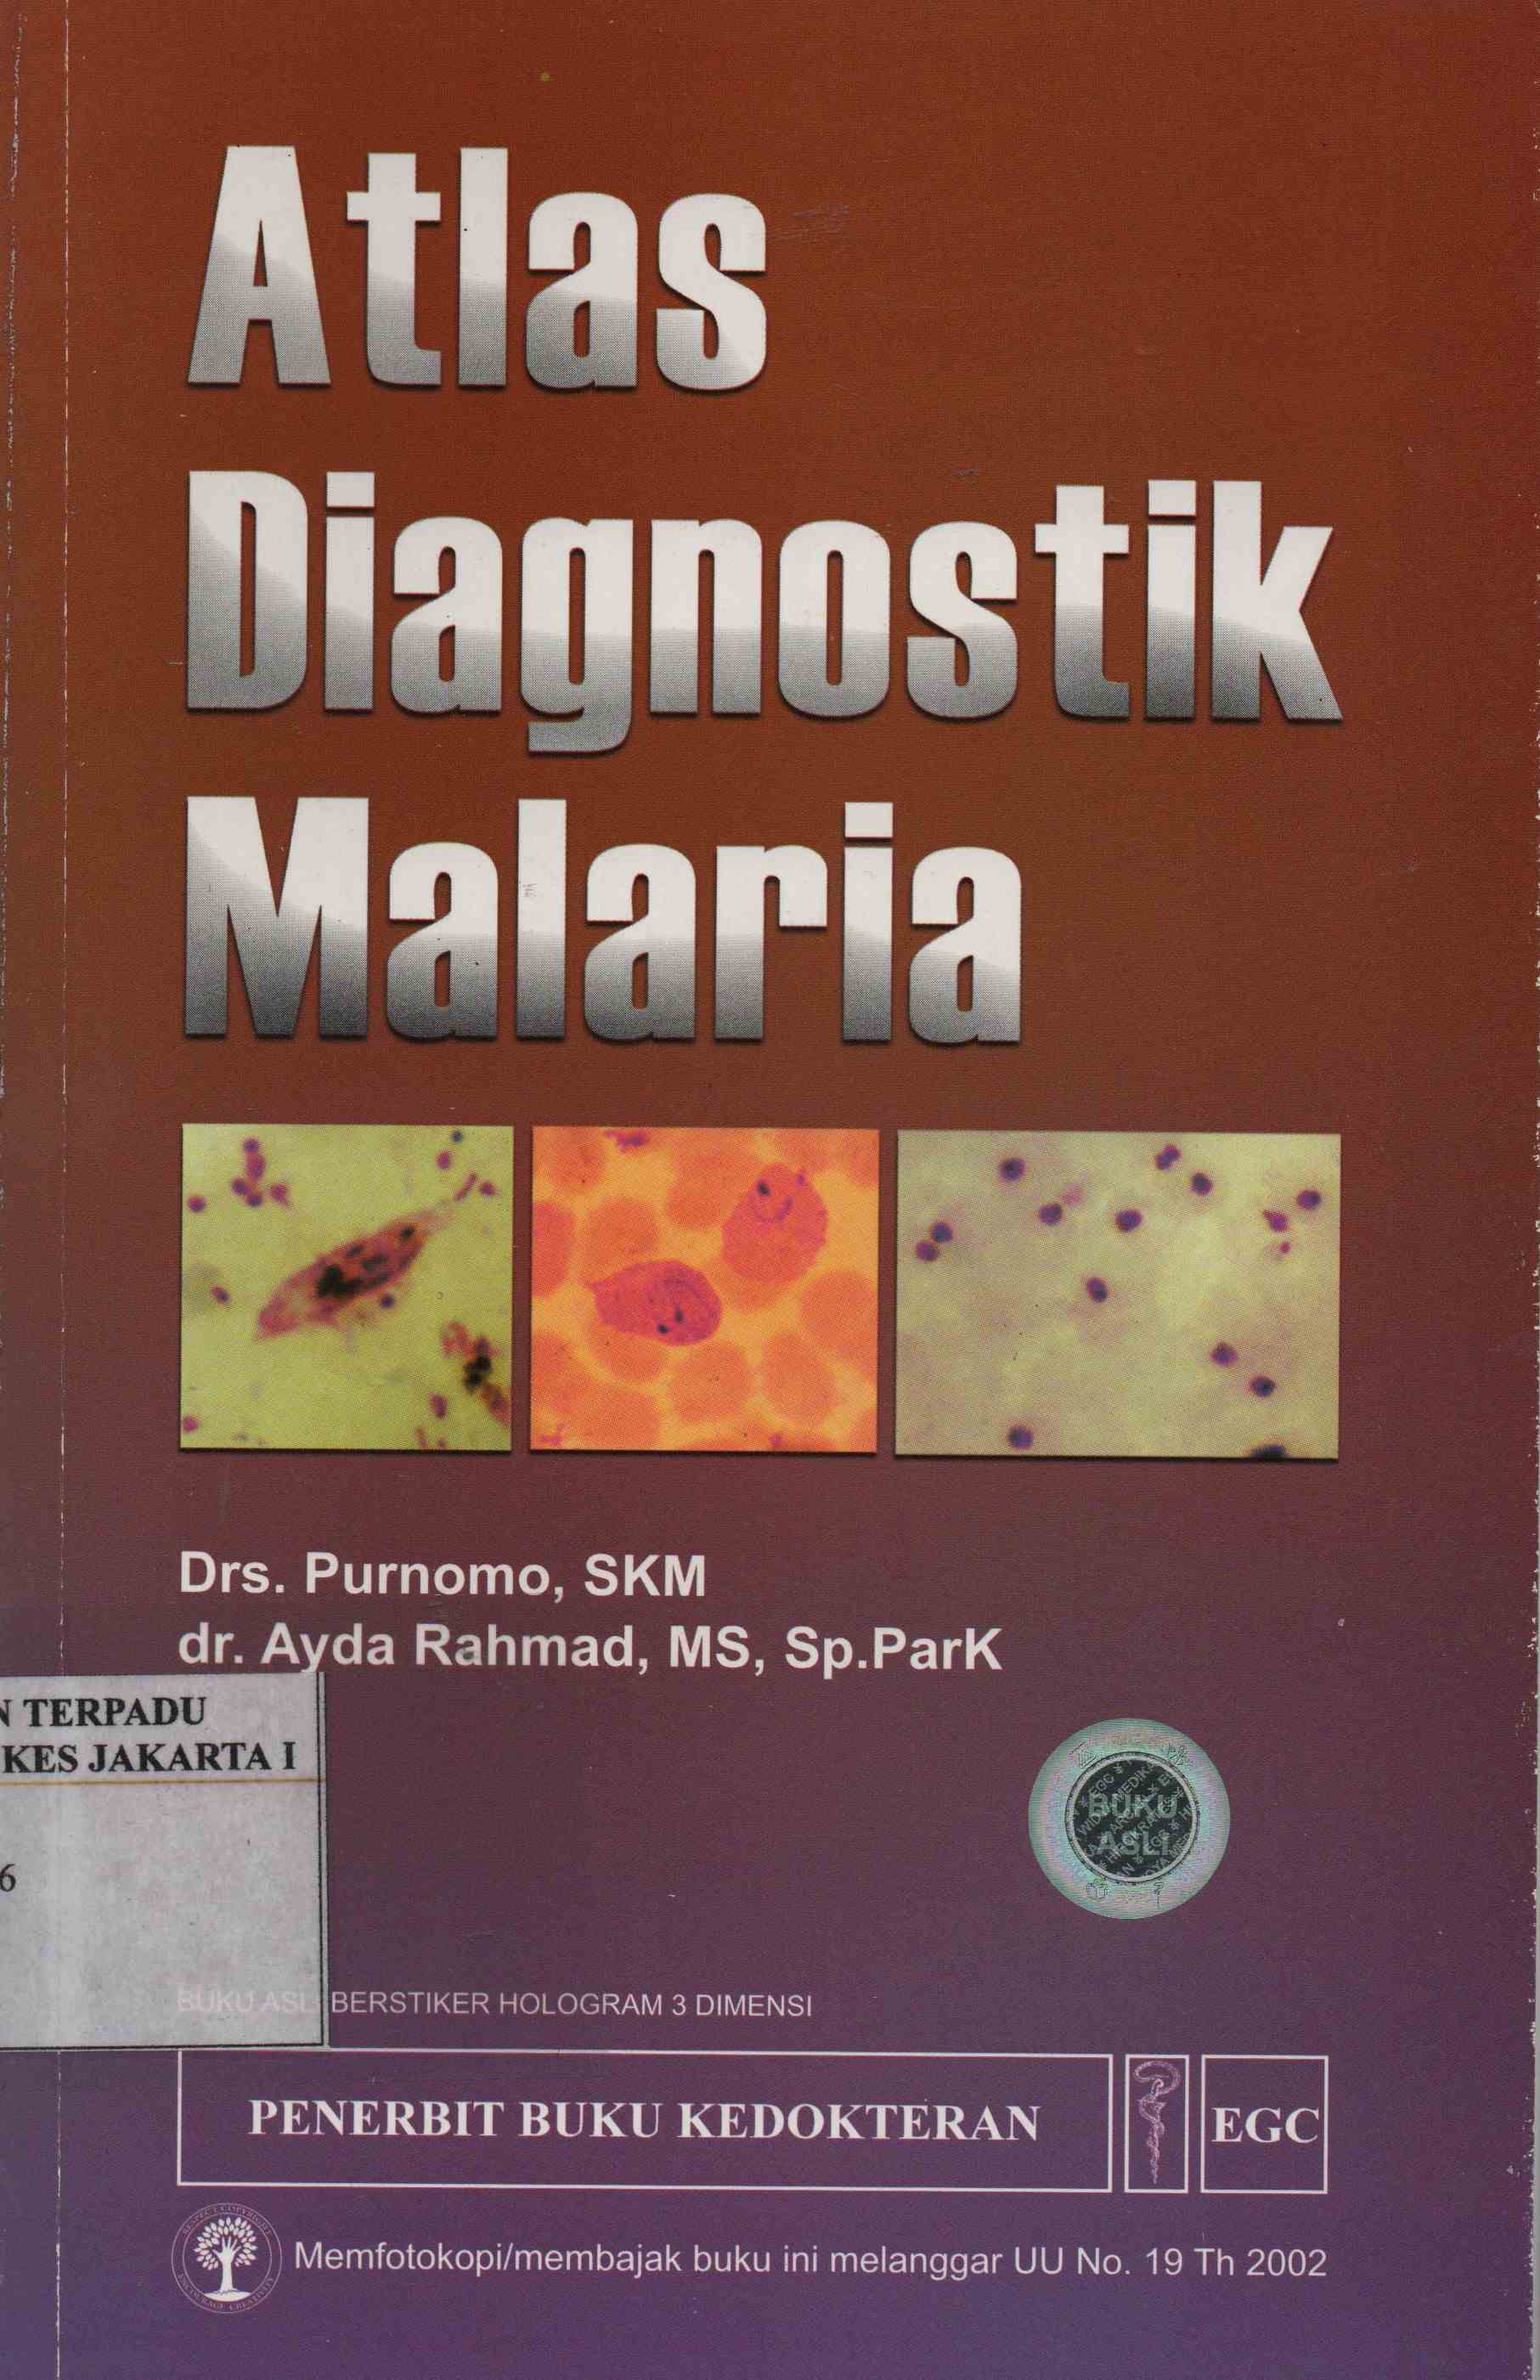 Atlas diagnostik malaria